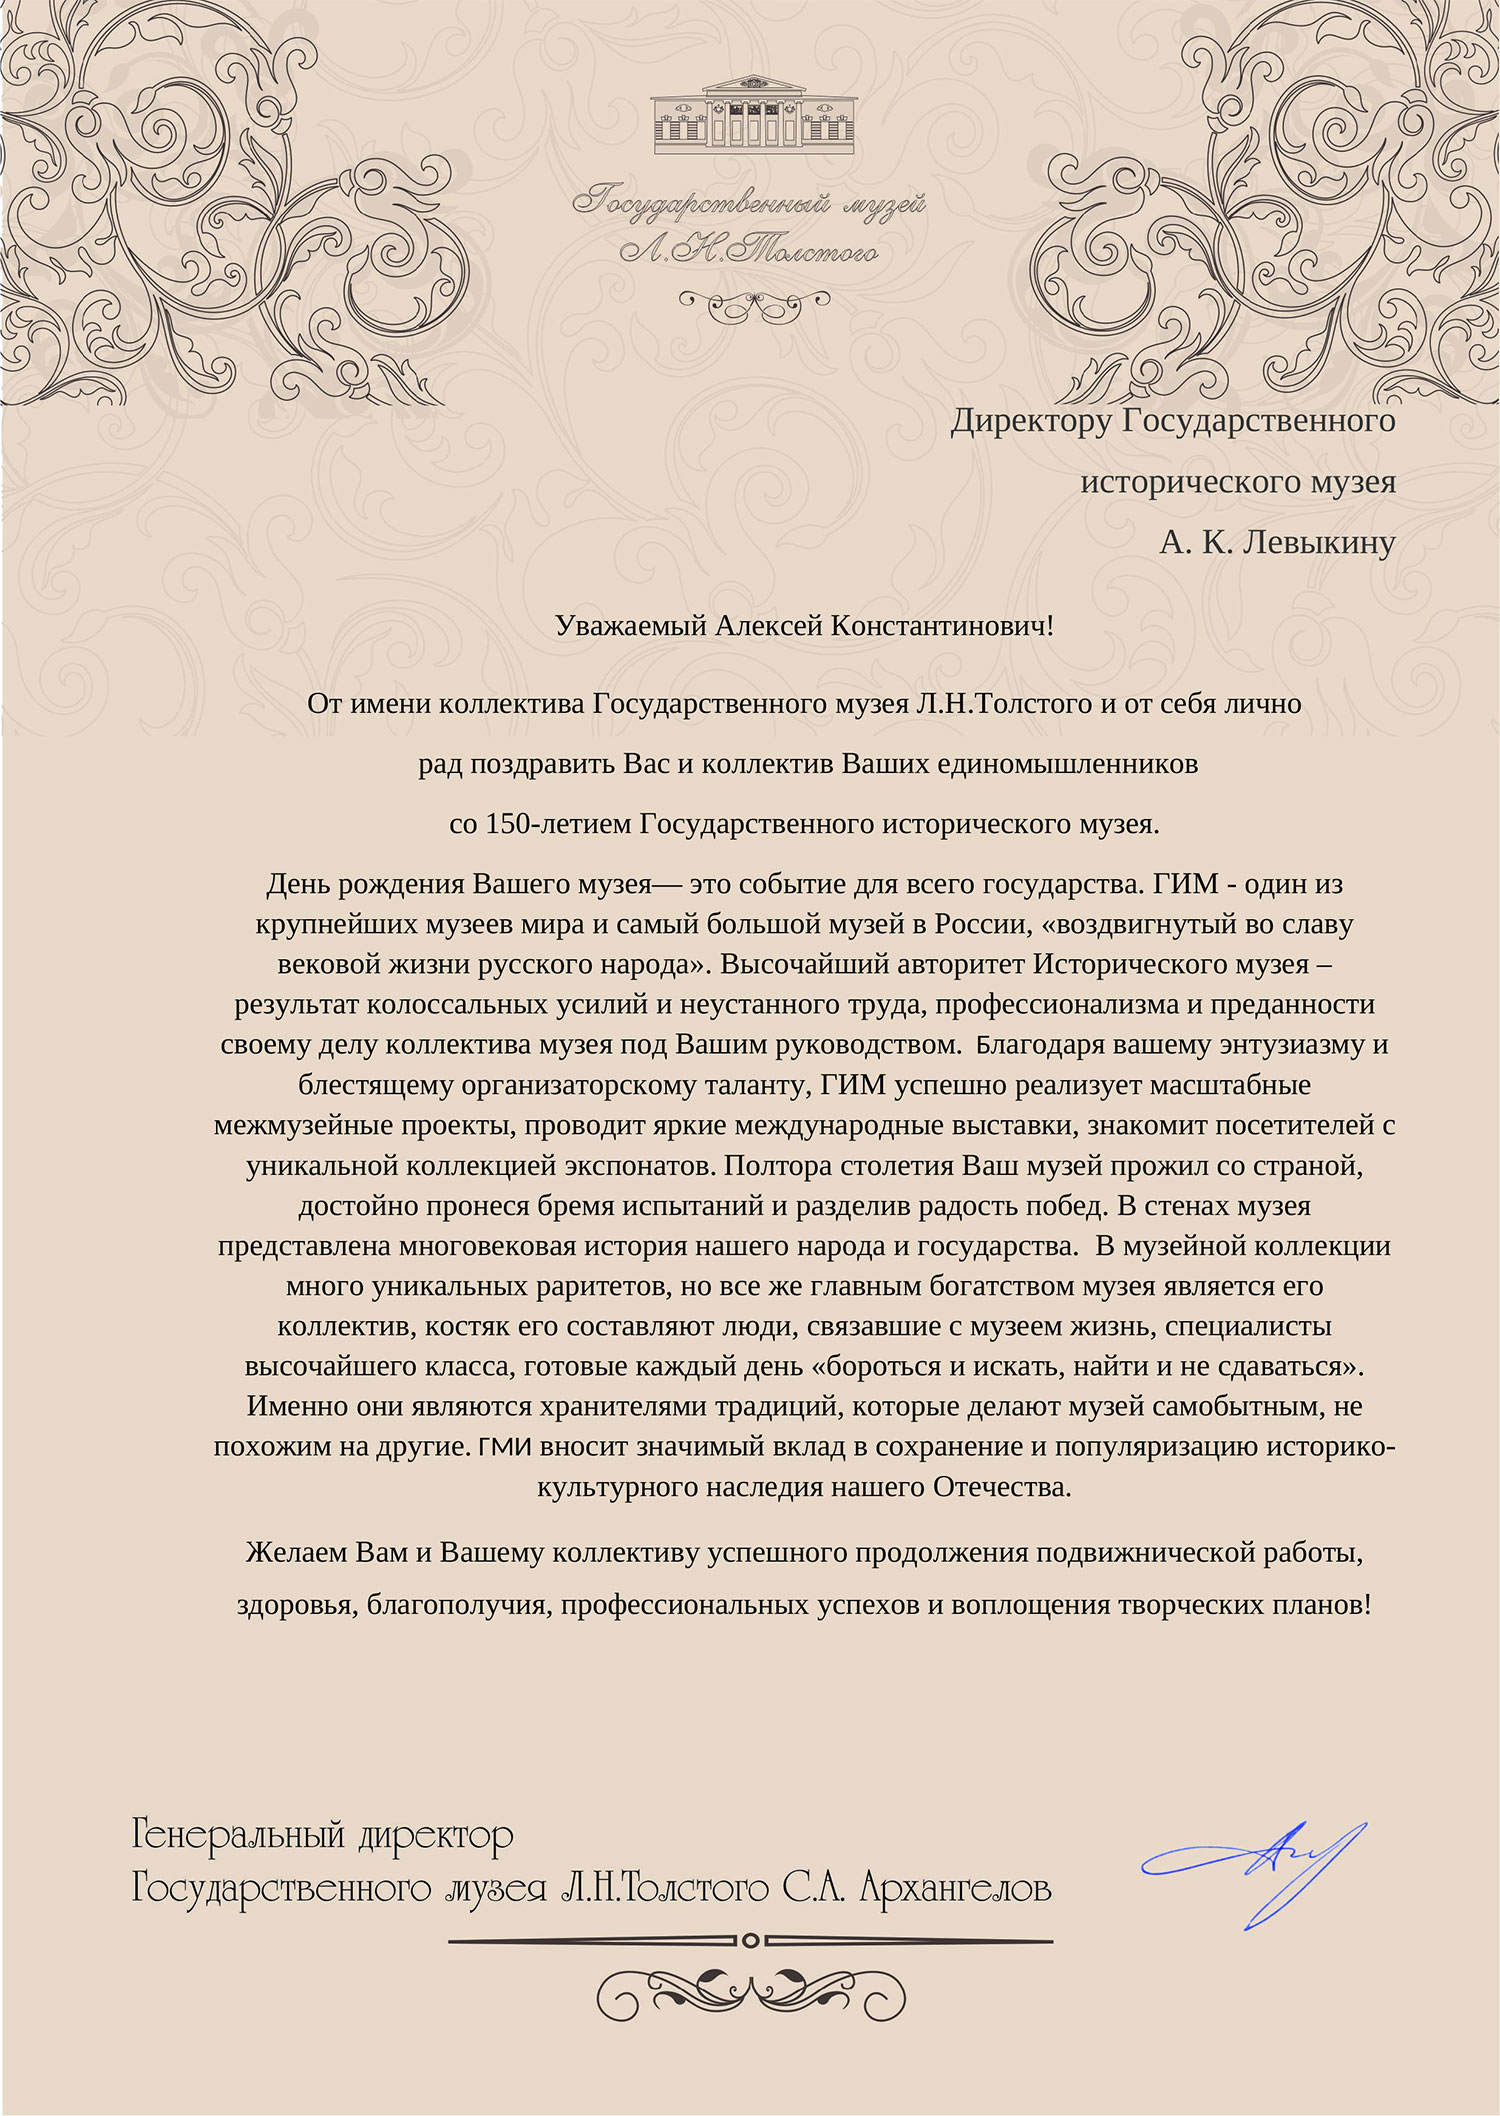 Письмо от генерального директора Государственного музея Л. Н. Толстого Архангелова С. А.